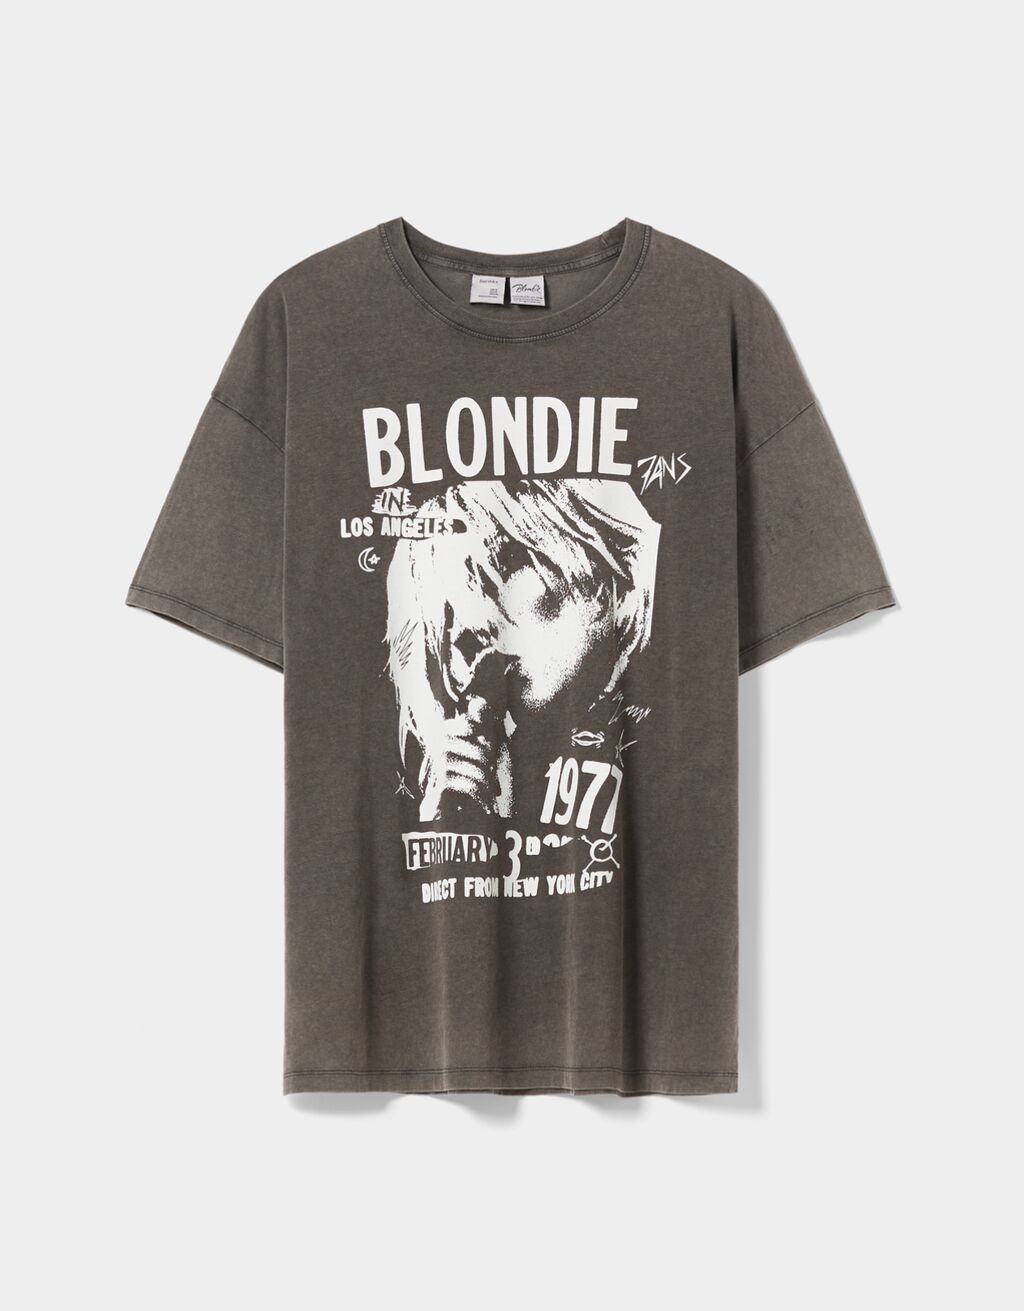 Lyhythihainen T-paita Blondie-printillä